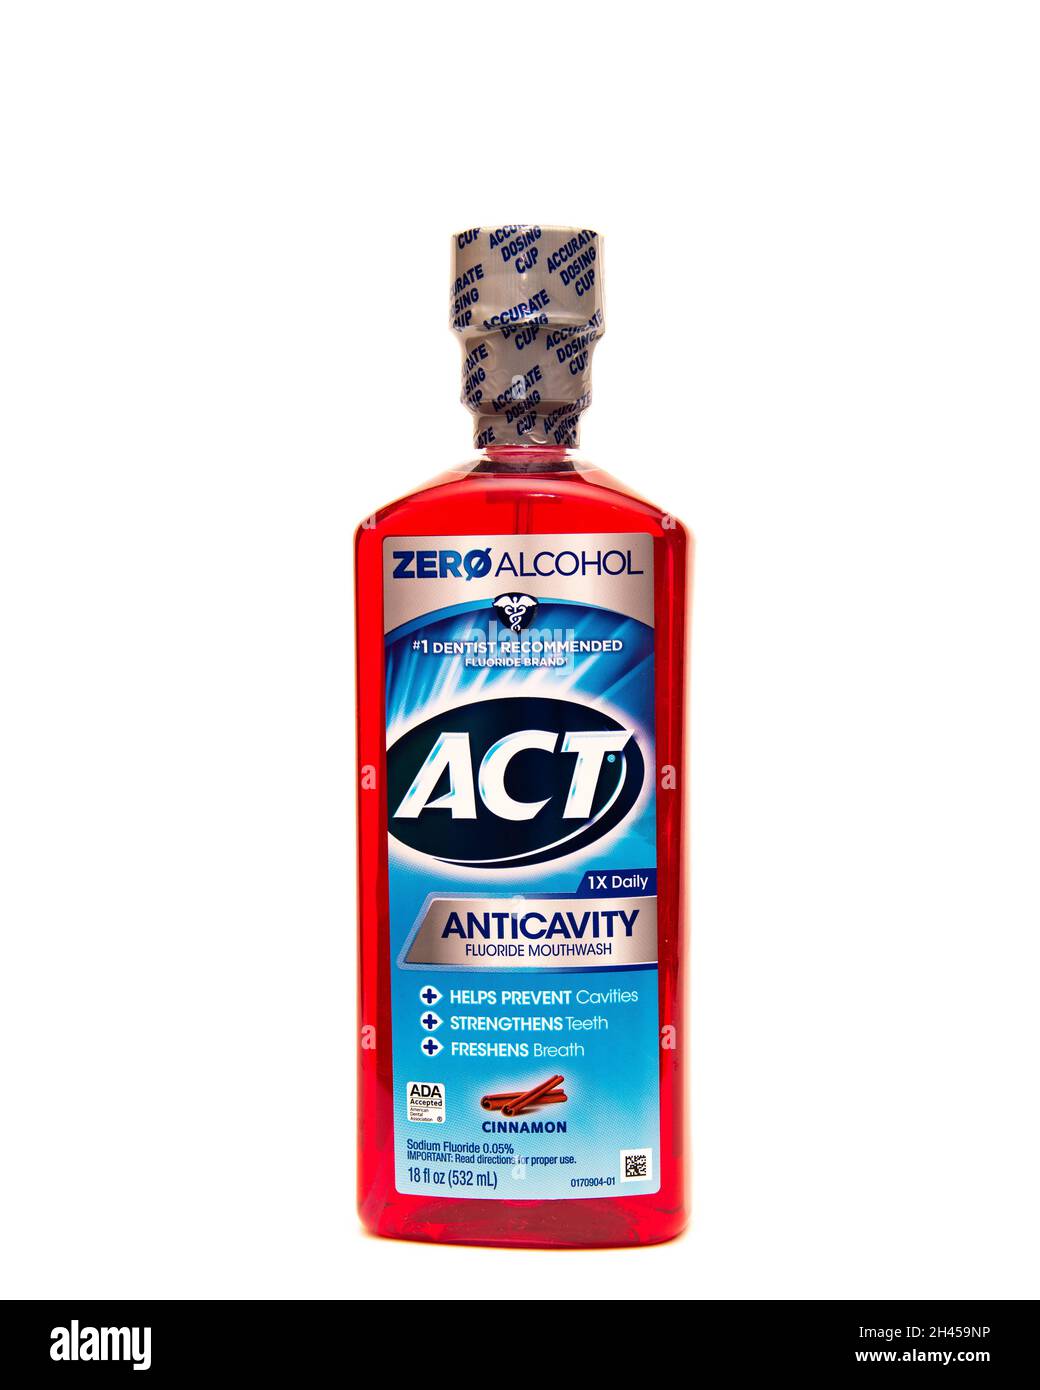 Eine Plastikflasche mit ACT-Zimt-Geschmack anticavity Fluorid Mundwasser, mit Null Alkohol, die #1 Zahnarzt empfohlen Fluorid Marke. Stockfoto